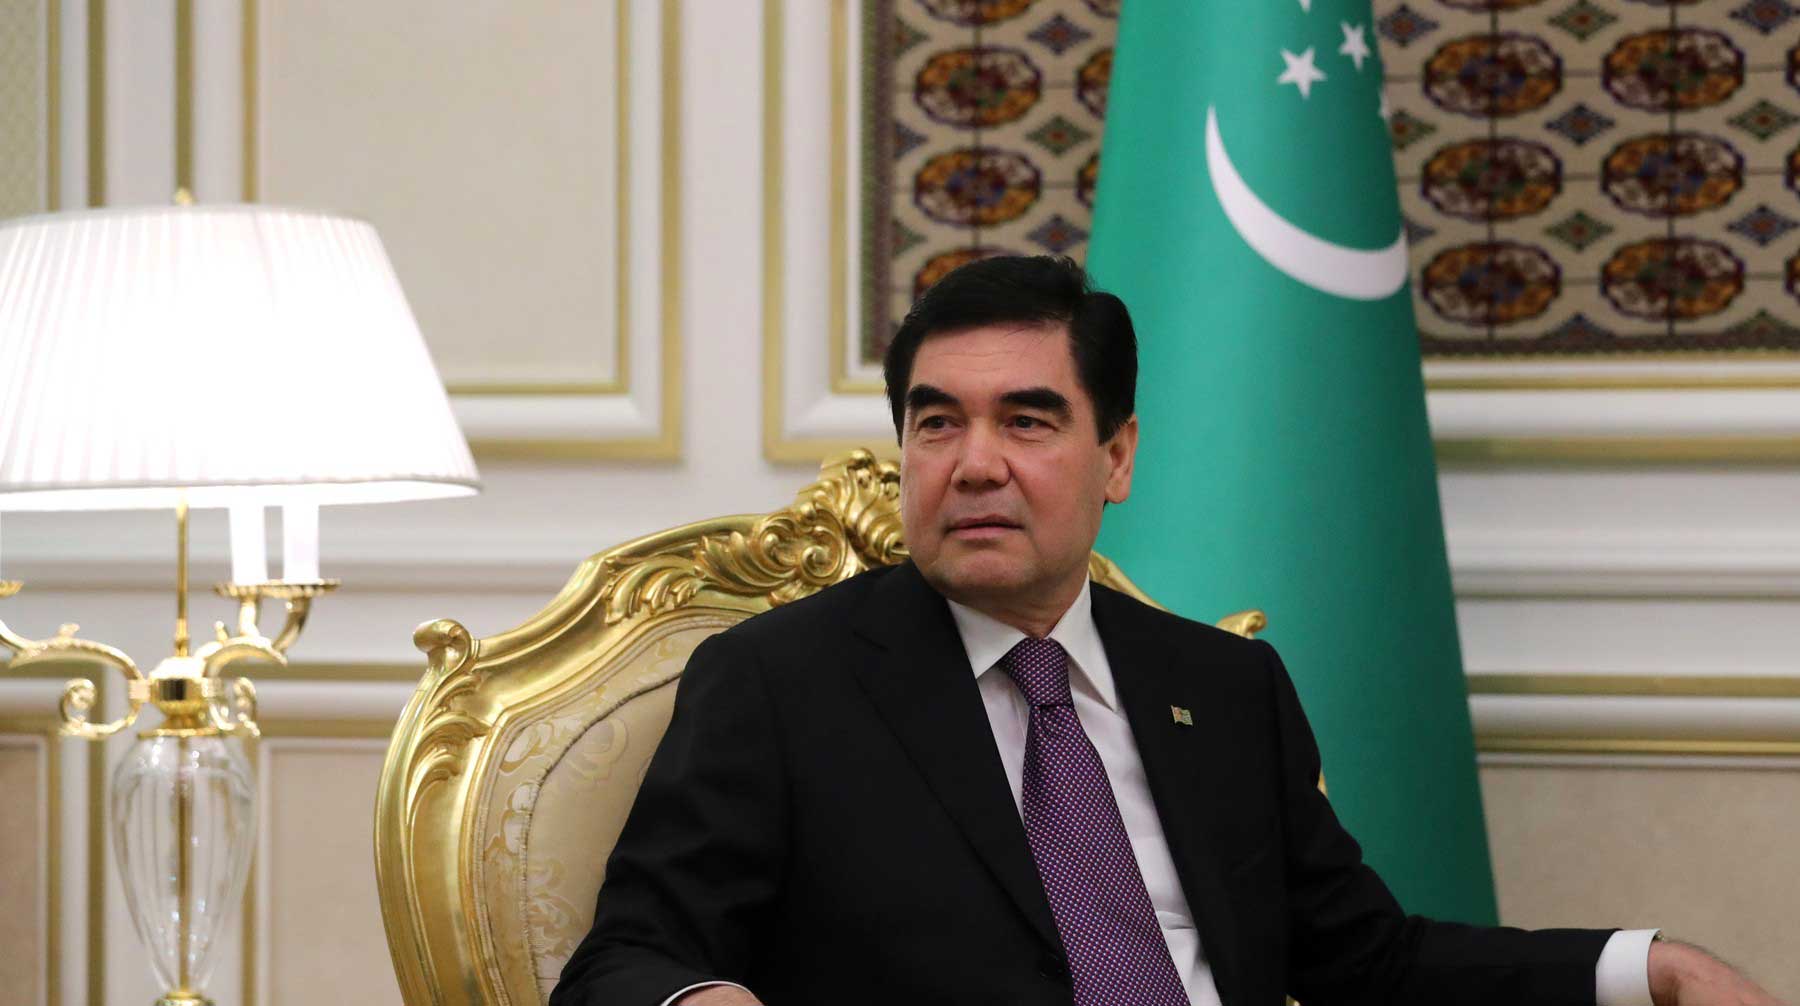 Туркменские СМИ в свою очередь заявили, что глава государства находится в Германии, где лечится его мать Фото: © GLOBAL LOOK Press / Kremlin Pool